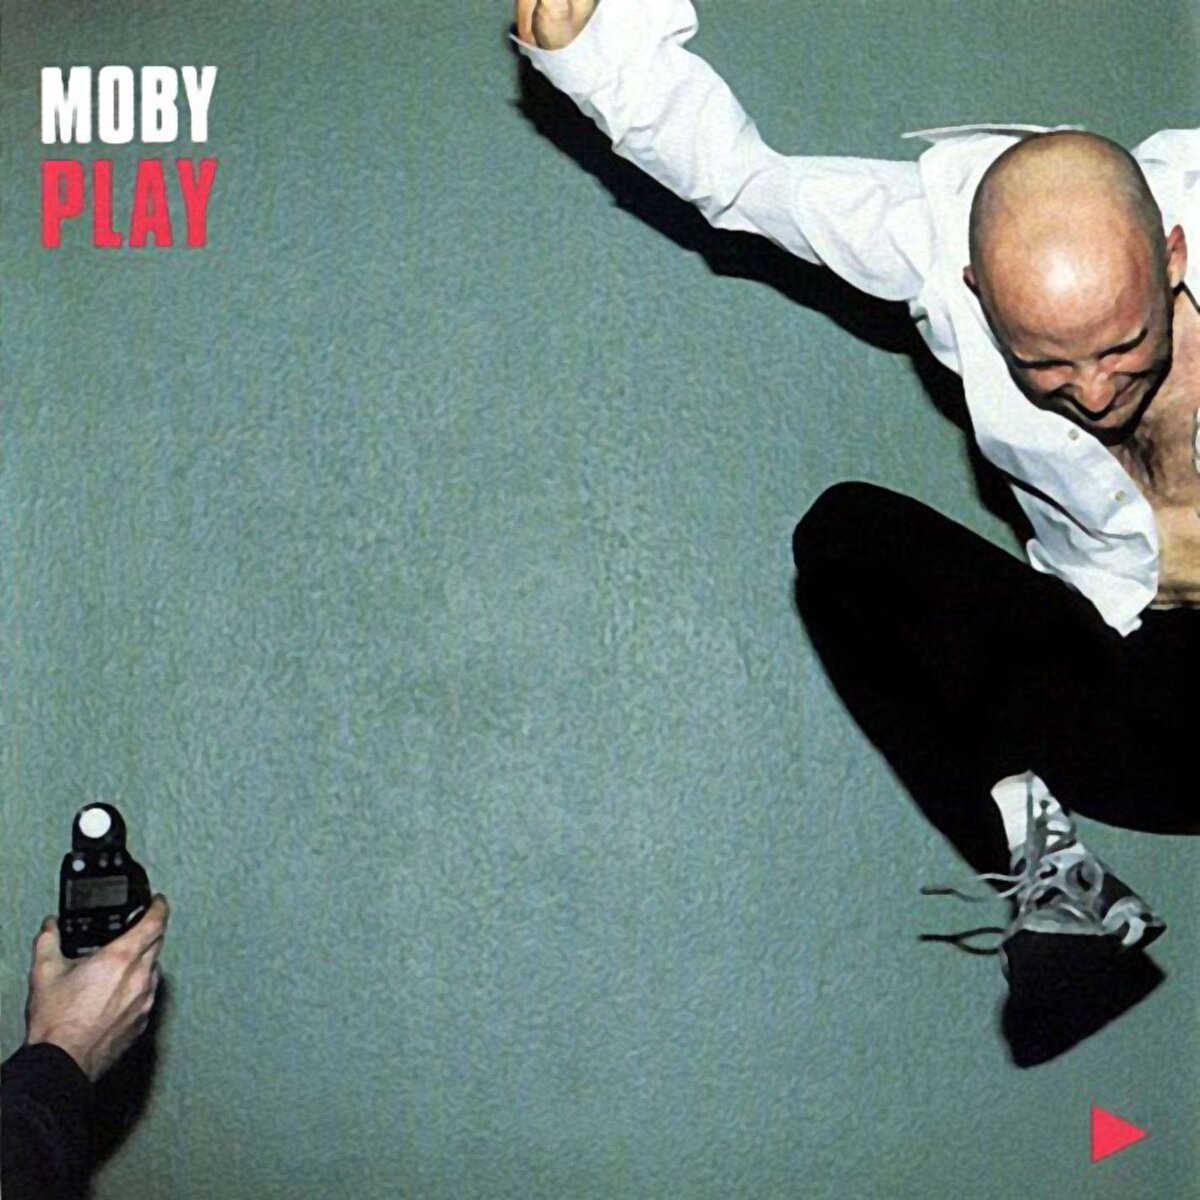 Обложка альбома "PLAY" американского композитора, аранжировщика, продюсера, мультиинструменталиста и иногда даже вокалиста Moby